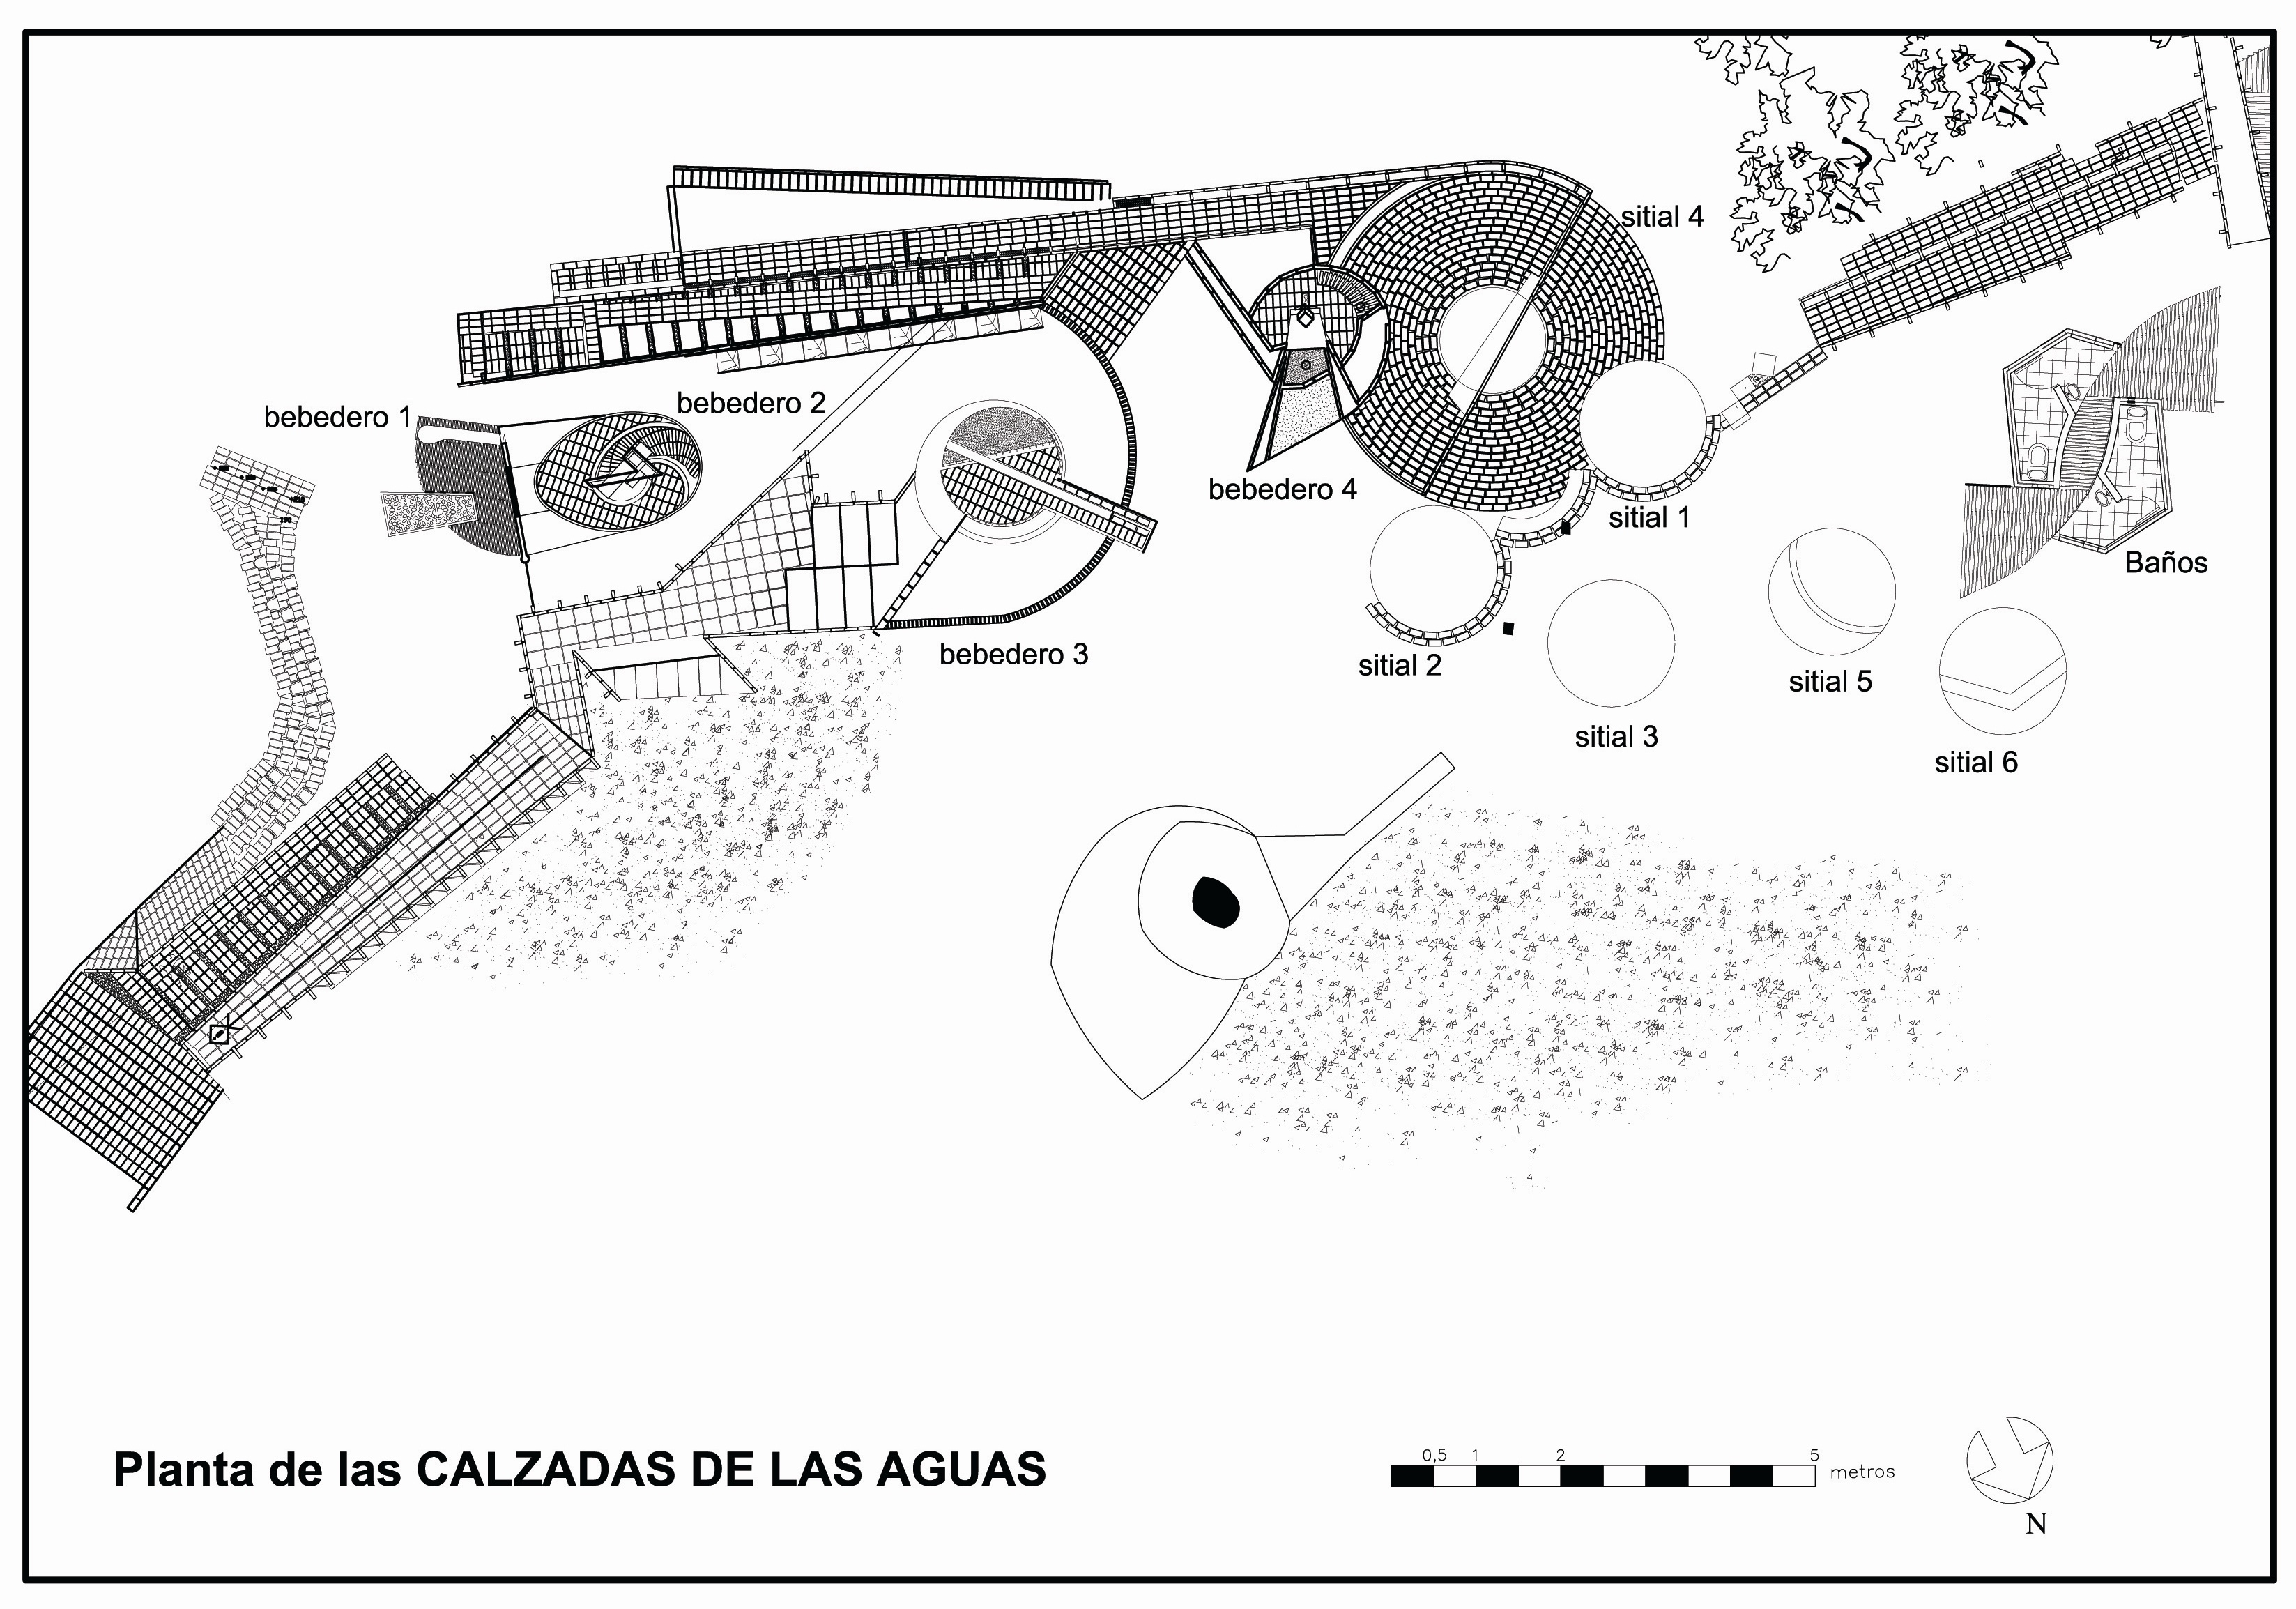 Planimetría general del proyecto Calzada de las Aguas